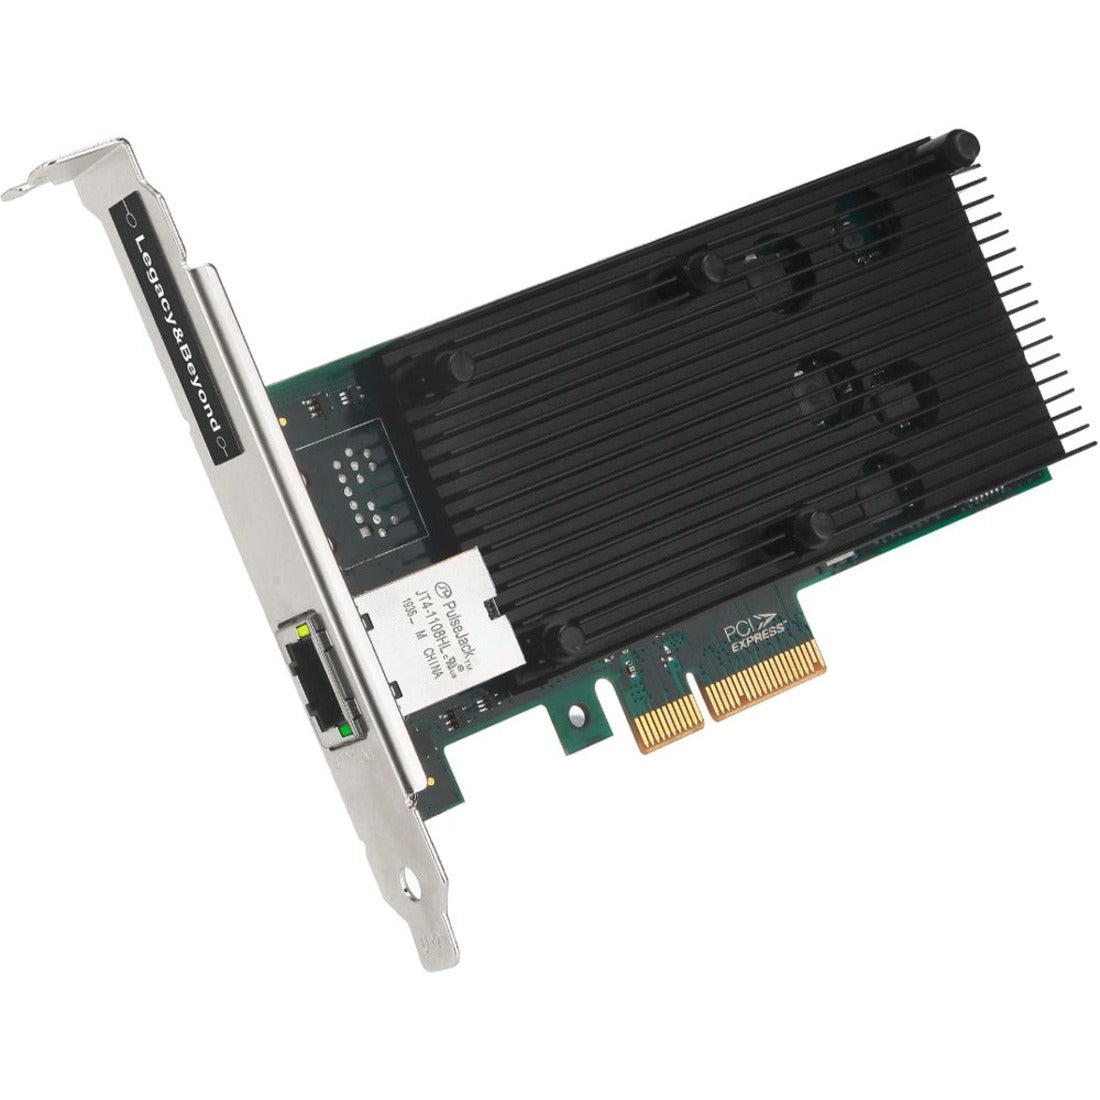 SIIG LB-GE0211-S1 Tarjeta de red Ethernet de 10G de un solo puerto PCI Express Tarjeta de Ethernet de 10 gigabits